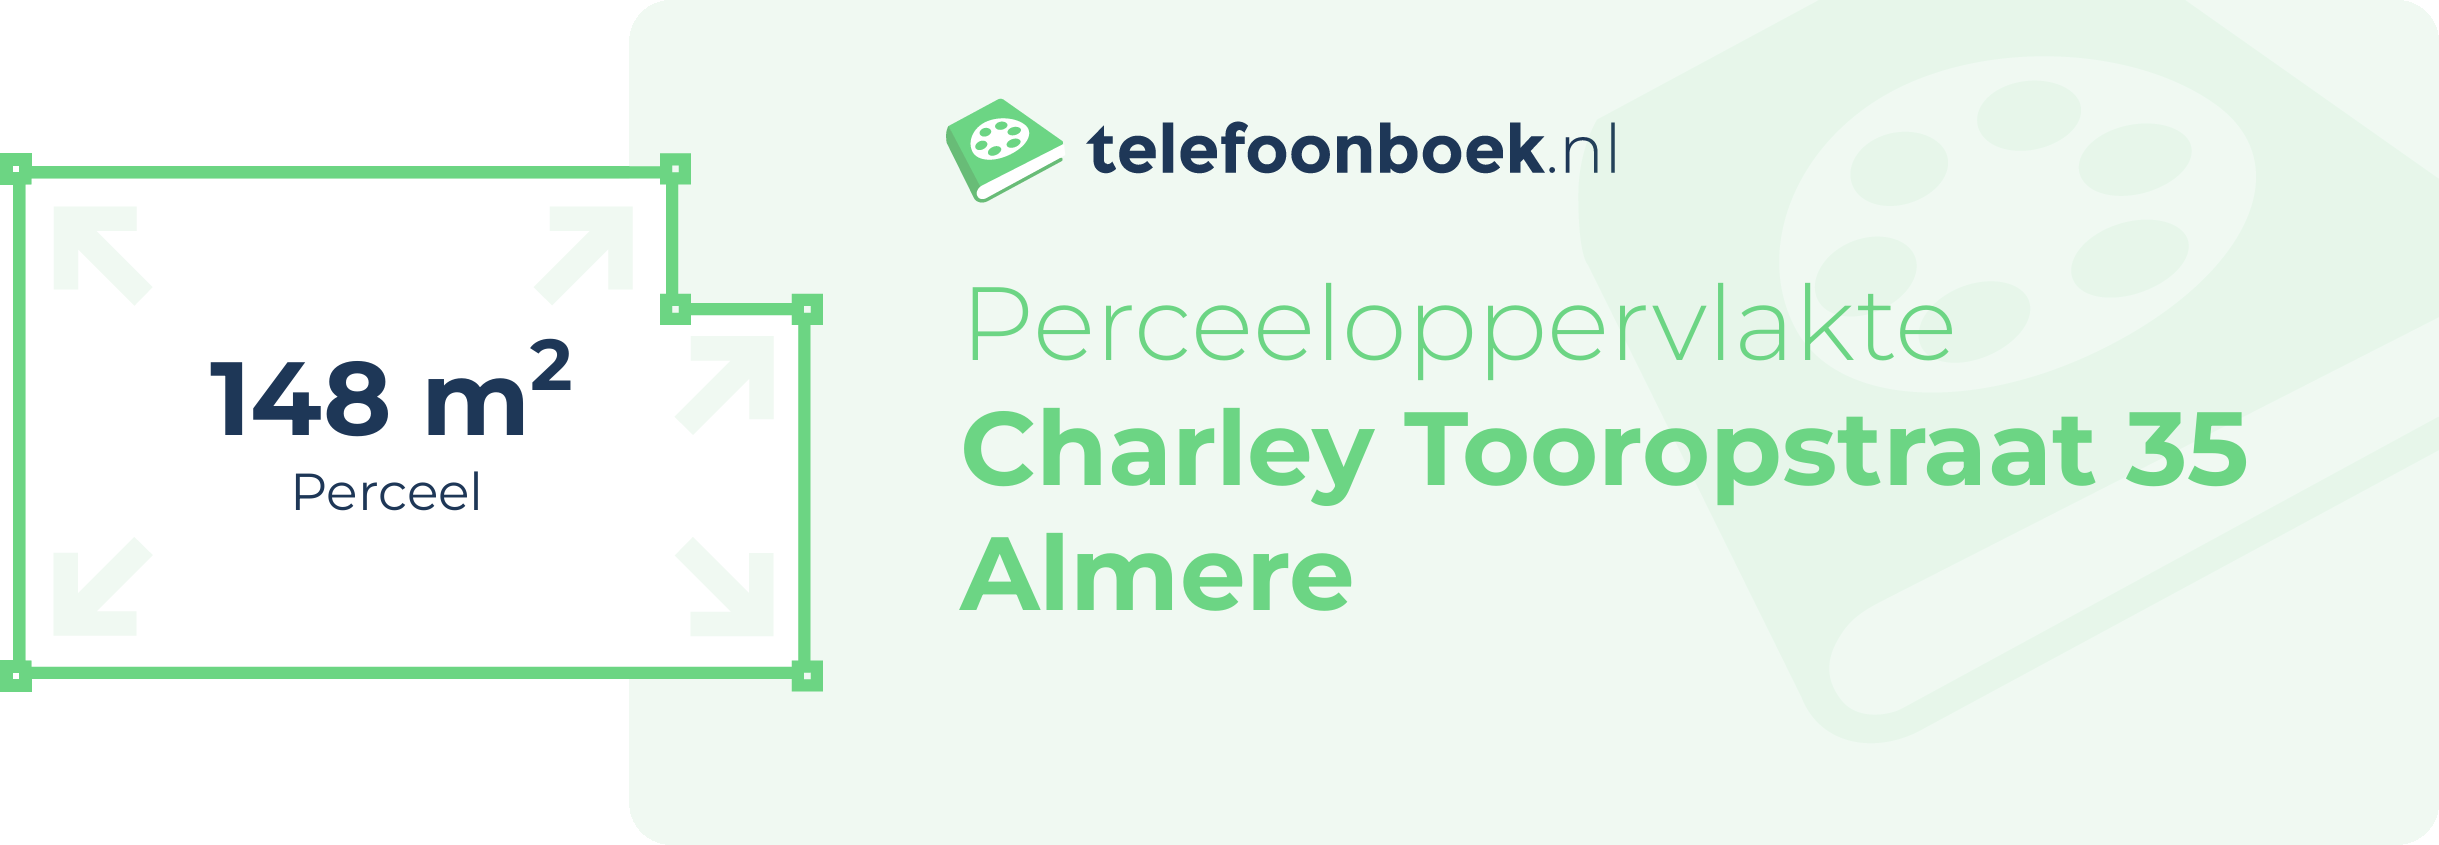 Perceeloppervlakte Charley Tooropstraat 35 Almere